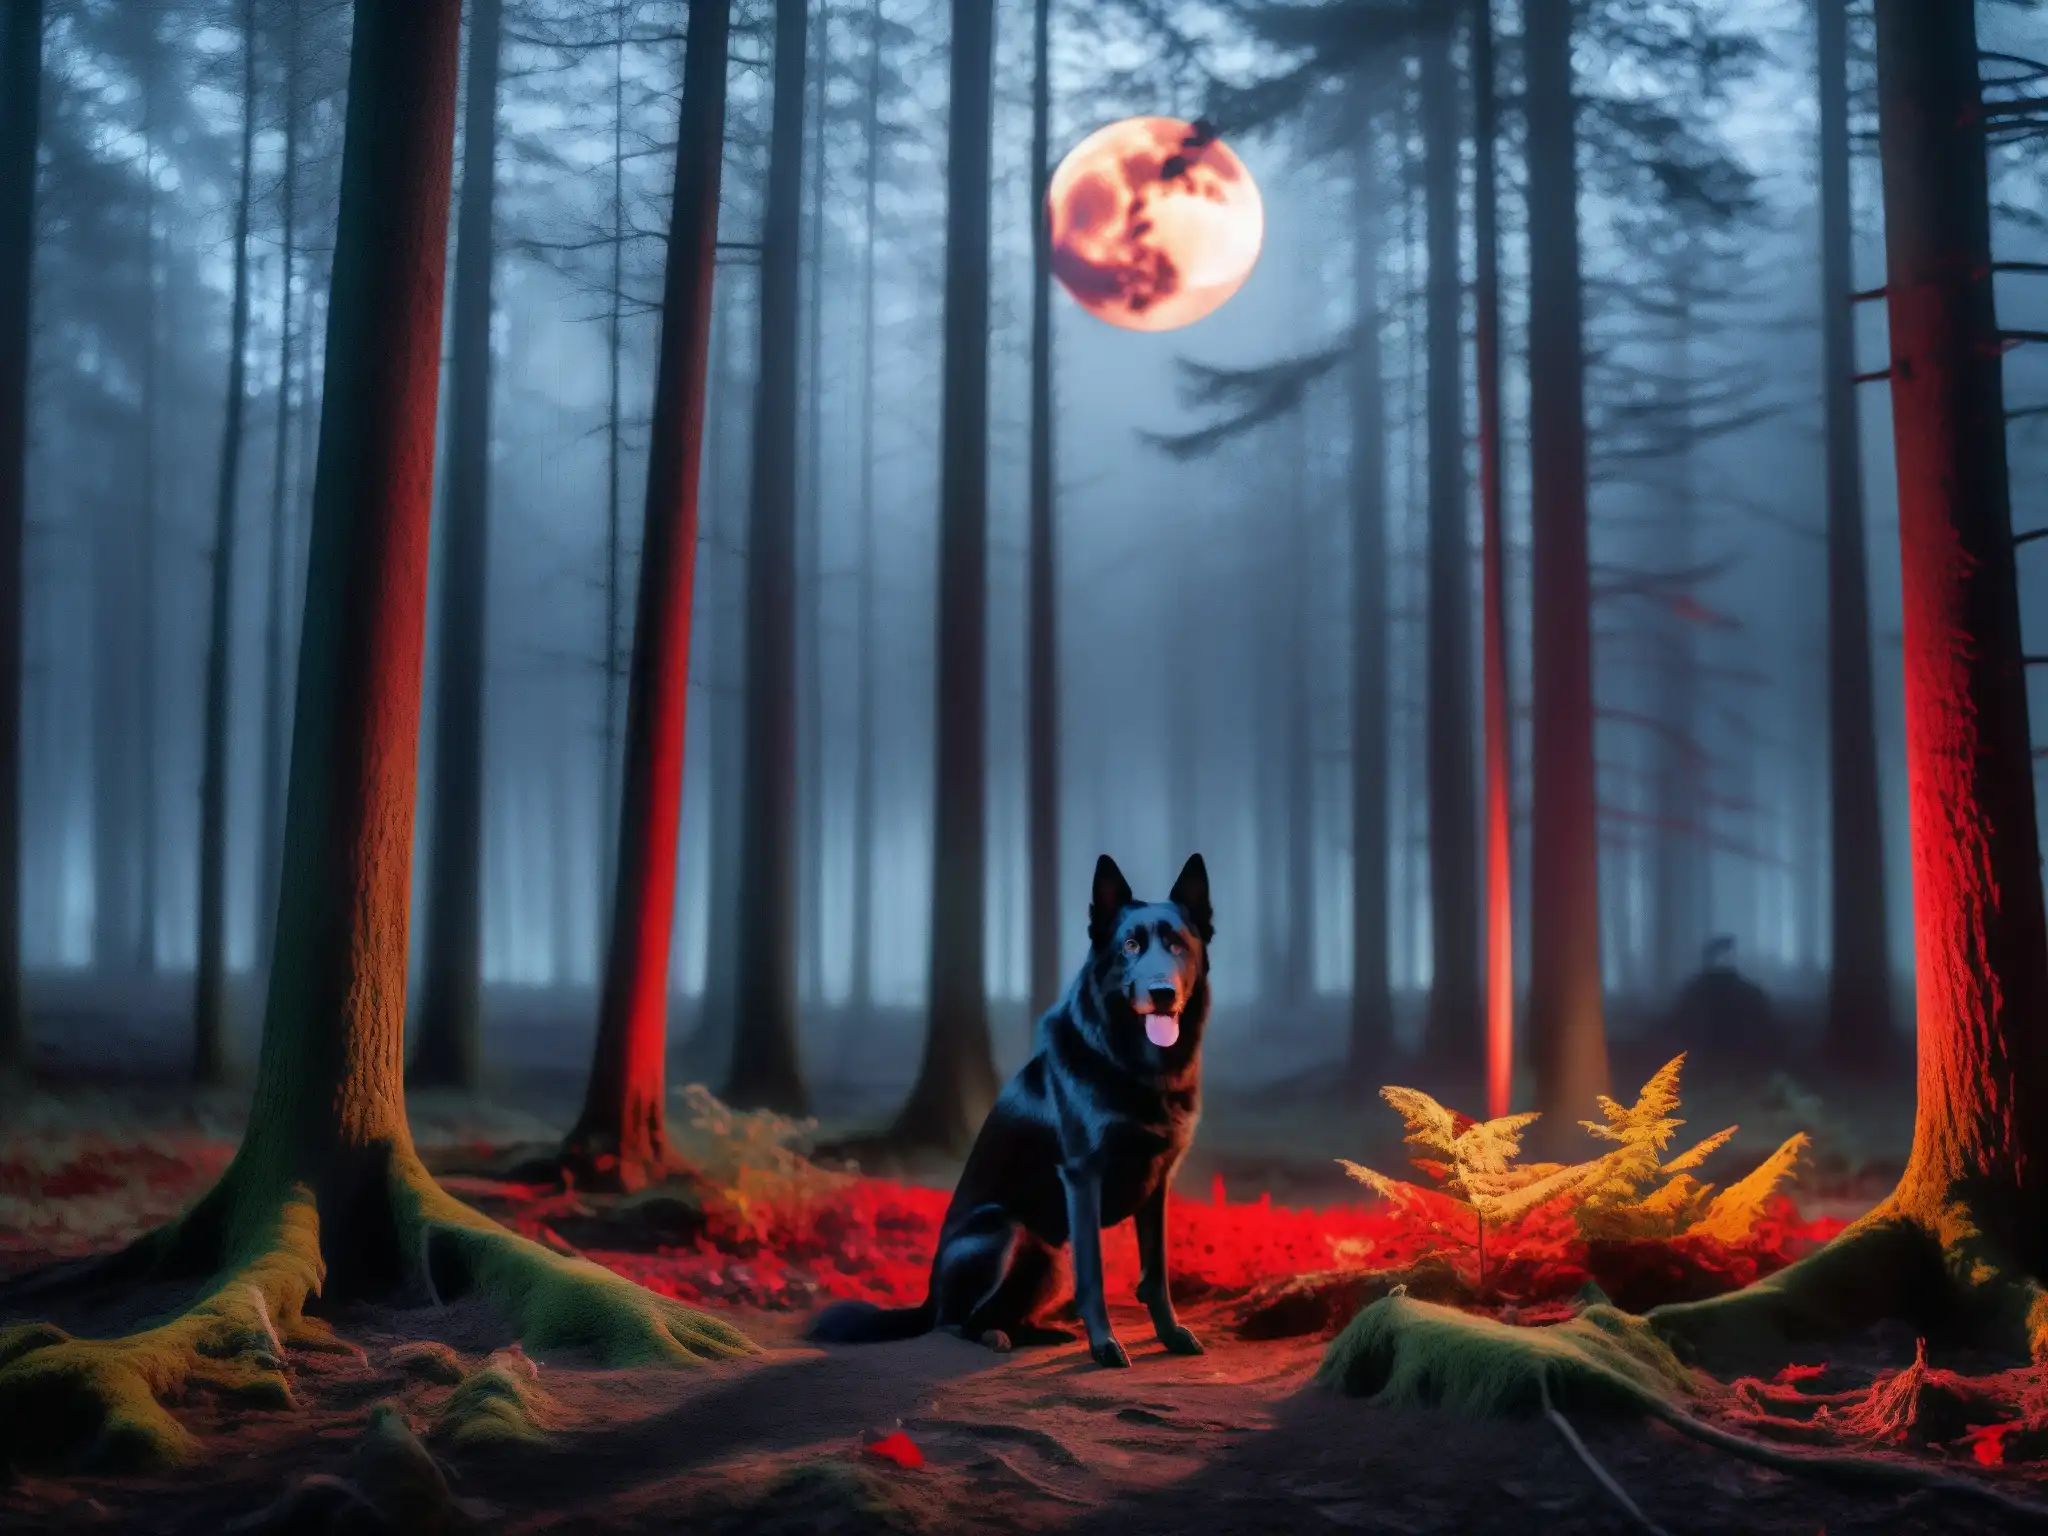 En un bosque oscuro y neblinoso, un gran perro negro con ojos rojos brilla en la penumbra, presagiando muerte